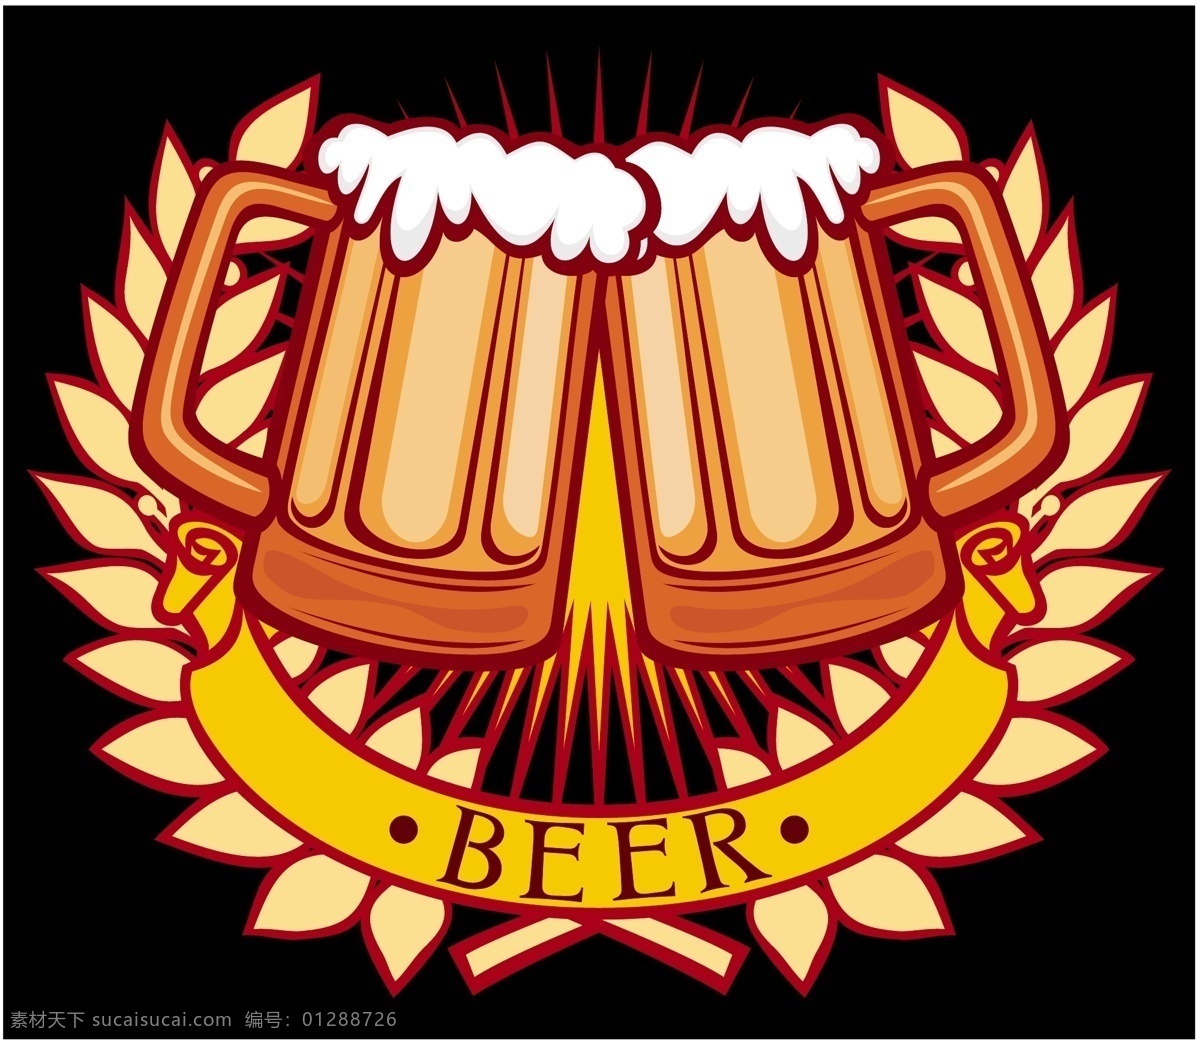 啤酒矢量图片 啤酒 杯子 矢量 图标 啤酒杯